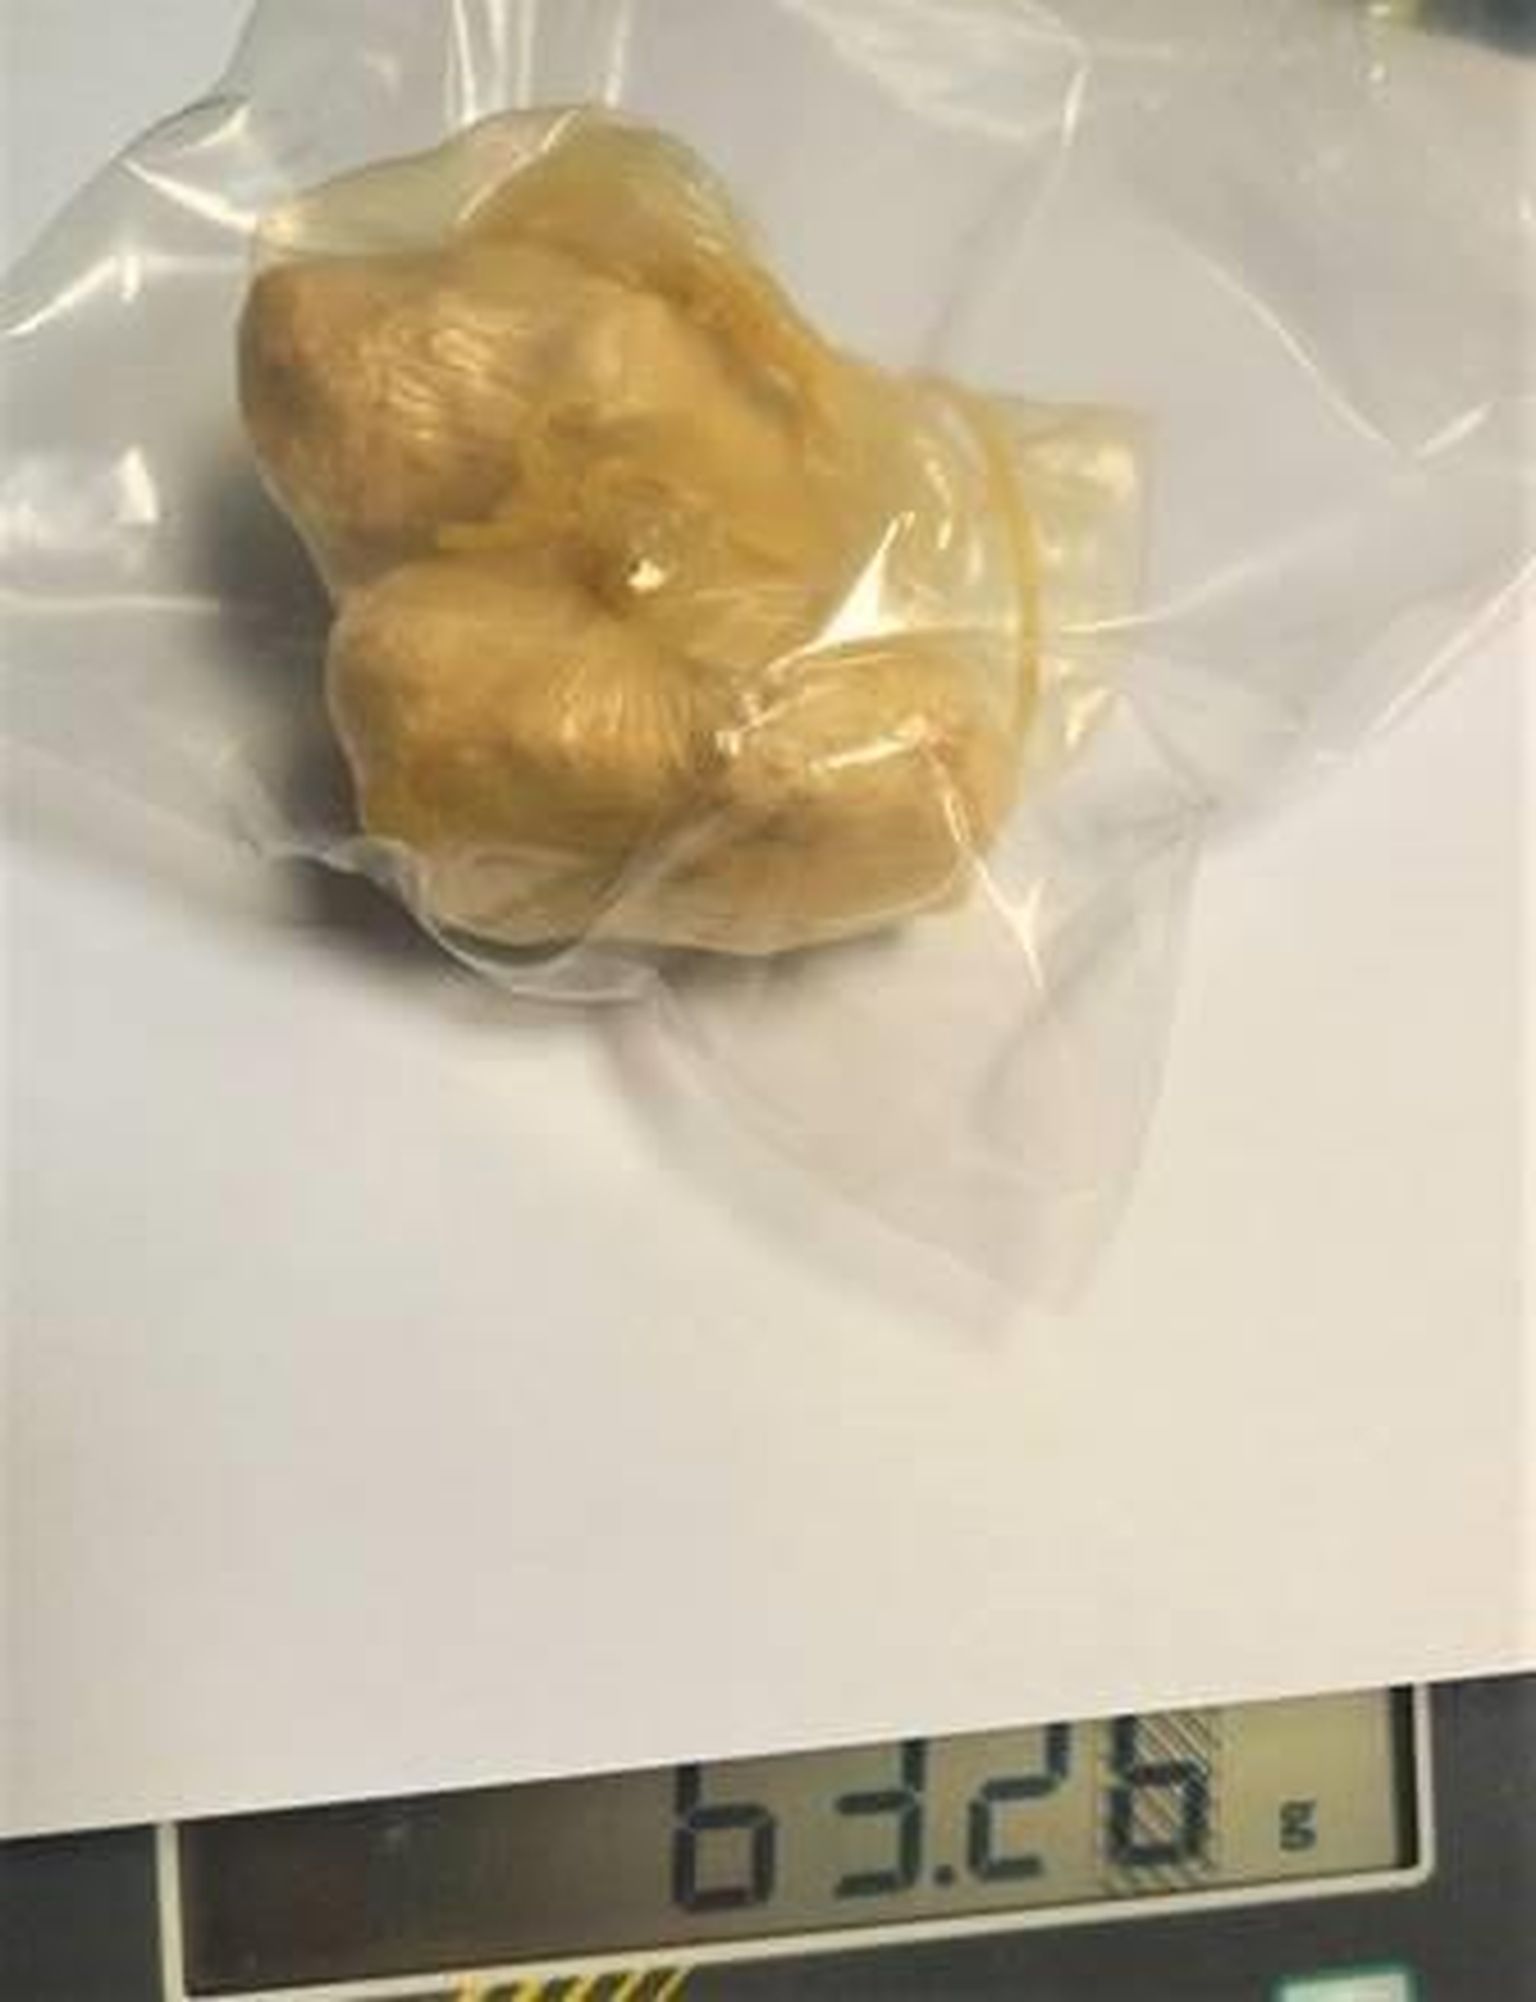 Pärnus peeti kinni inimene, kelle kehaõõnest avastati kaks kollakat pakki, aine reageeris fentanüüli kiirtestile.